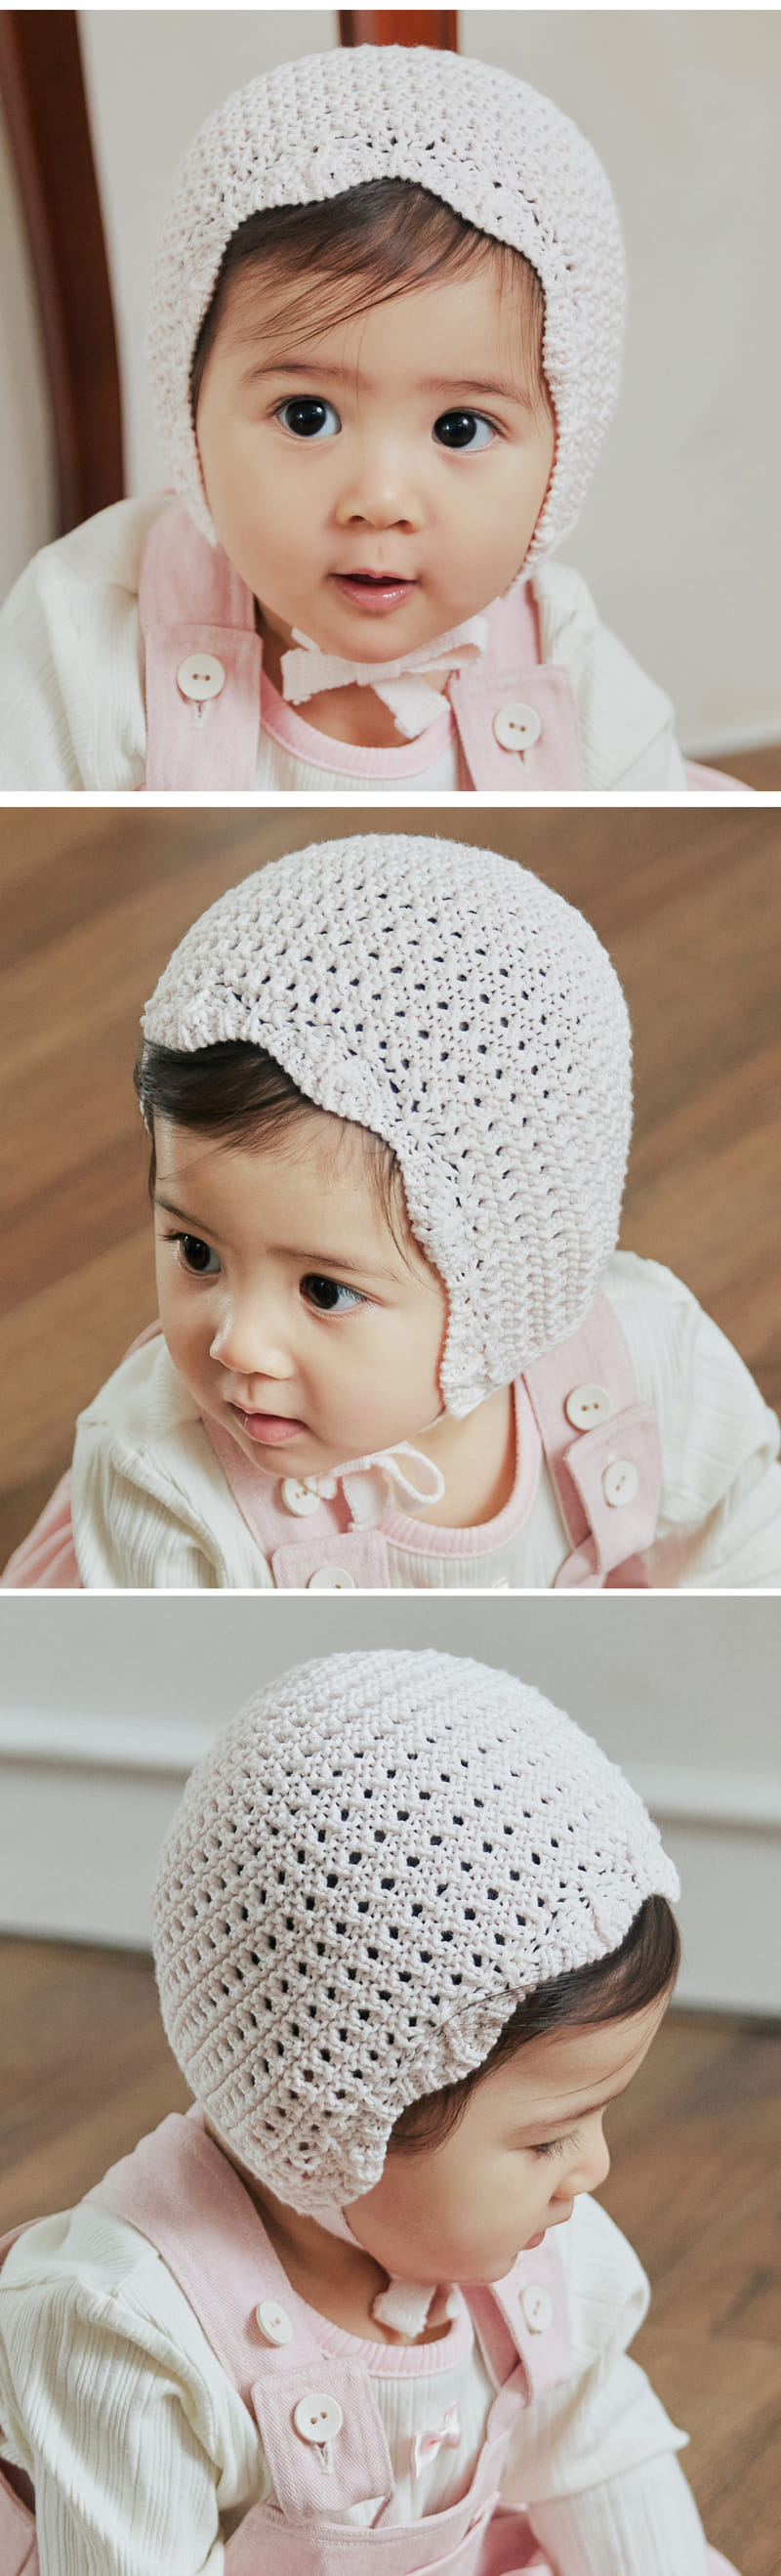 Littletini - Korean Baby Fashion - #babyclothing - Scarlet Hat - 3